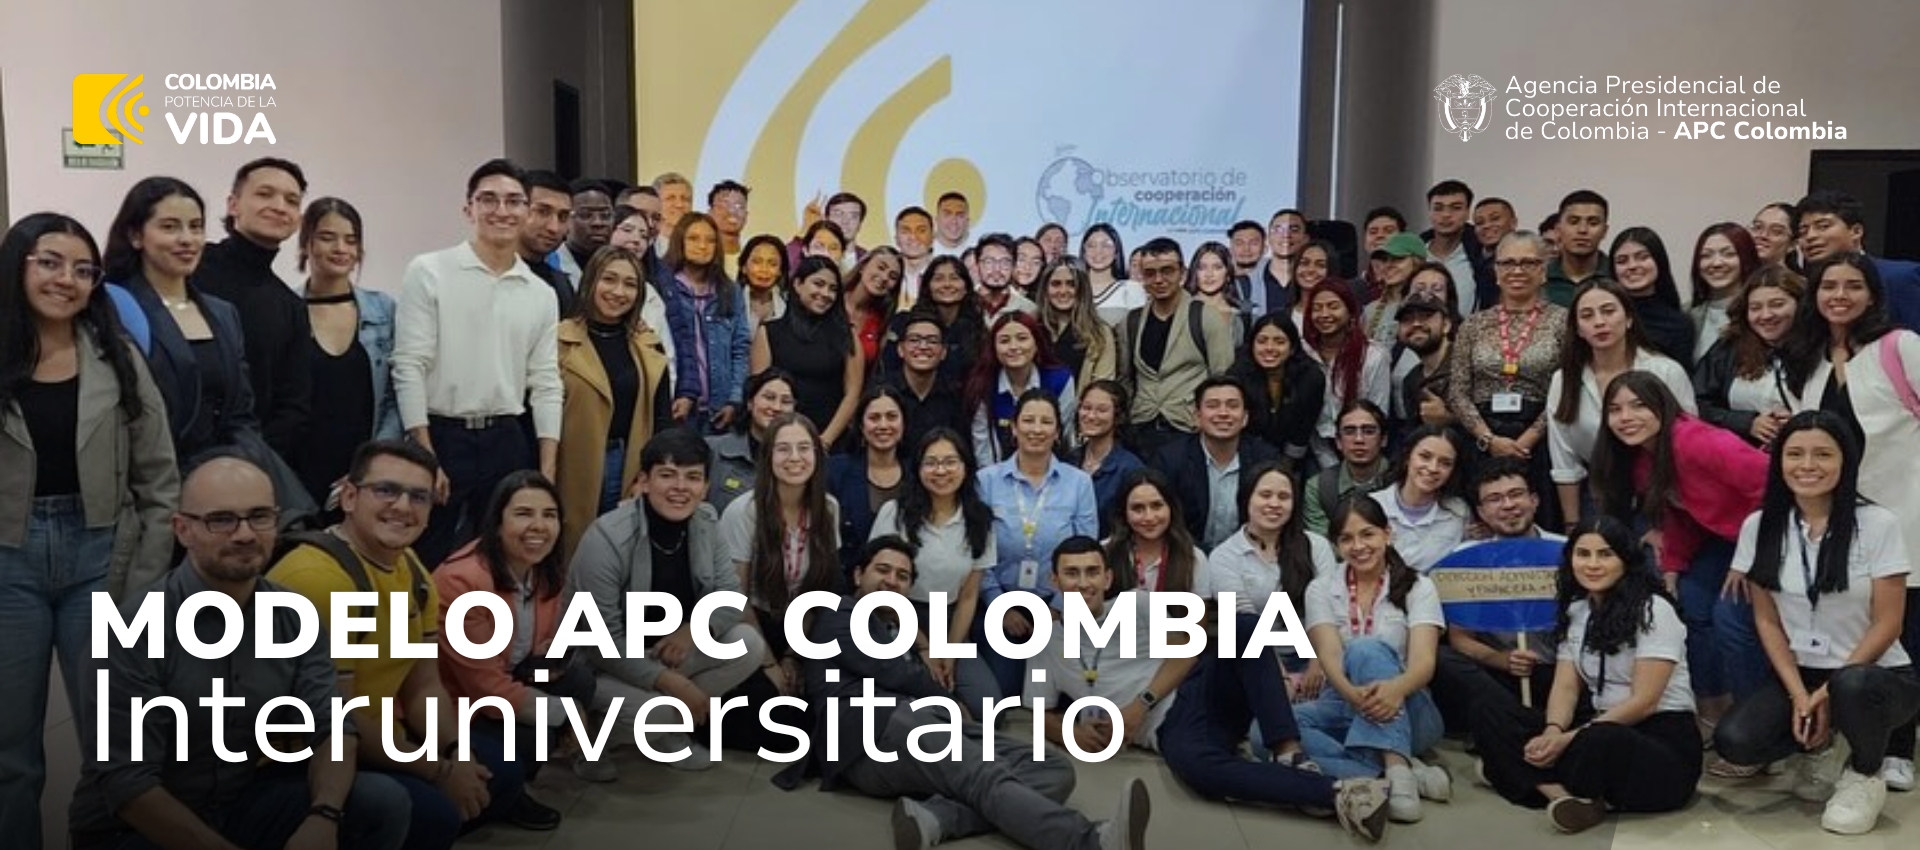 Primer Modelo APC Colombia interuniversitario 